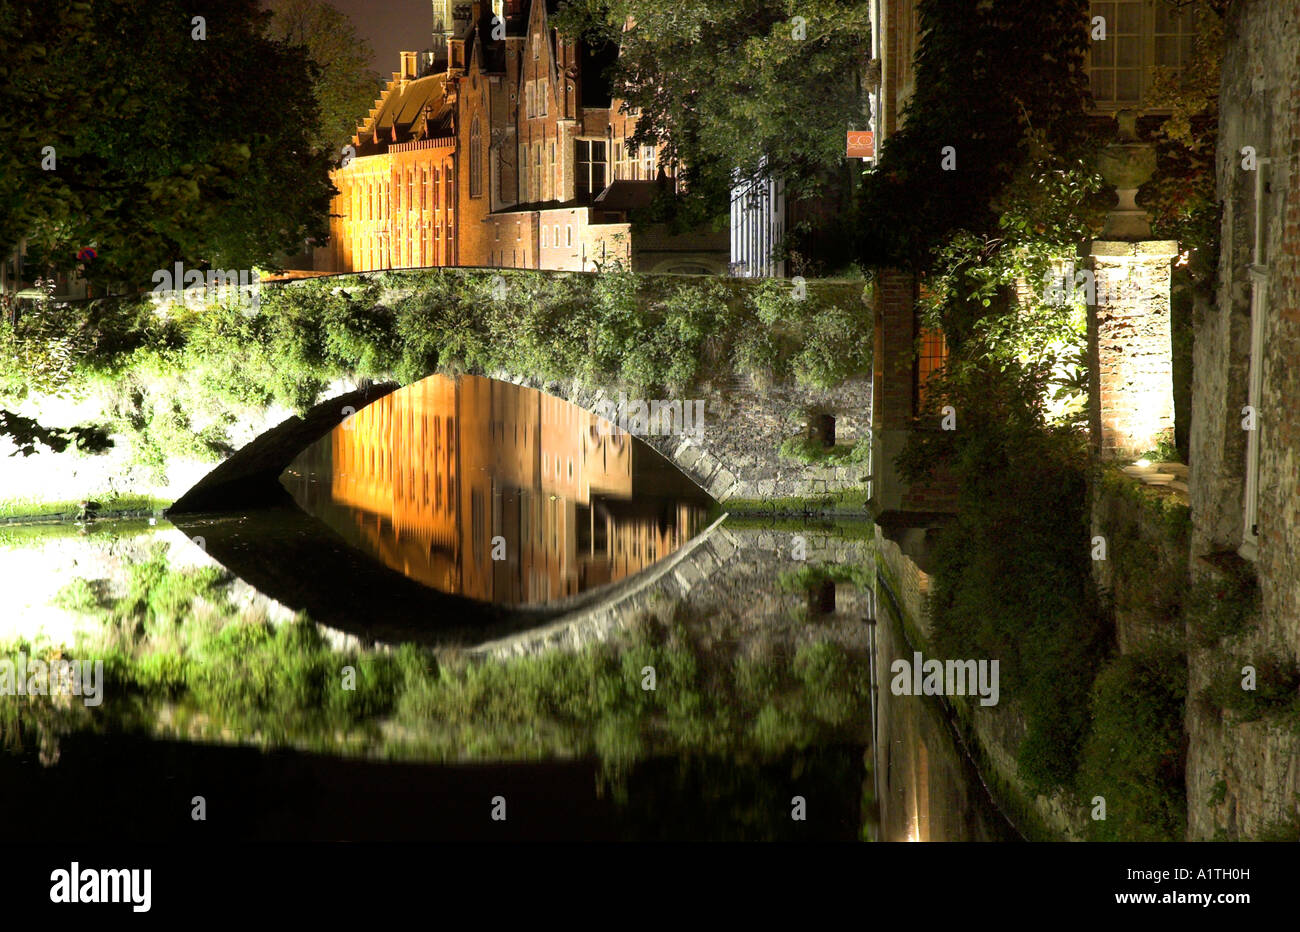 Eine Nachtaufnahme der mittelalterlichen Stadt Brügge mit den Gebäuden und Brücke perfekt in den Kanal wider Stockfoto